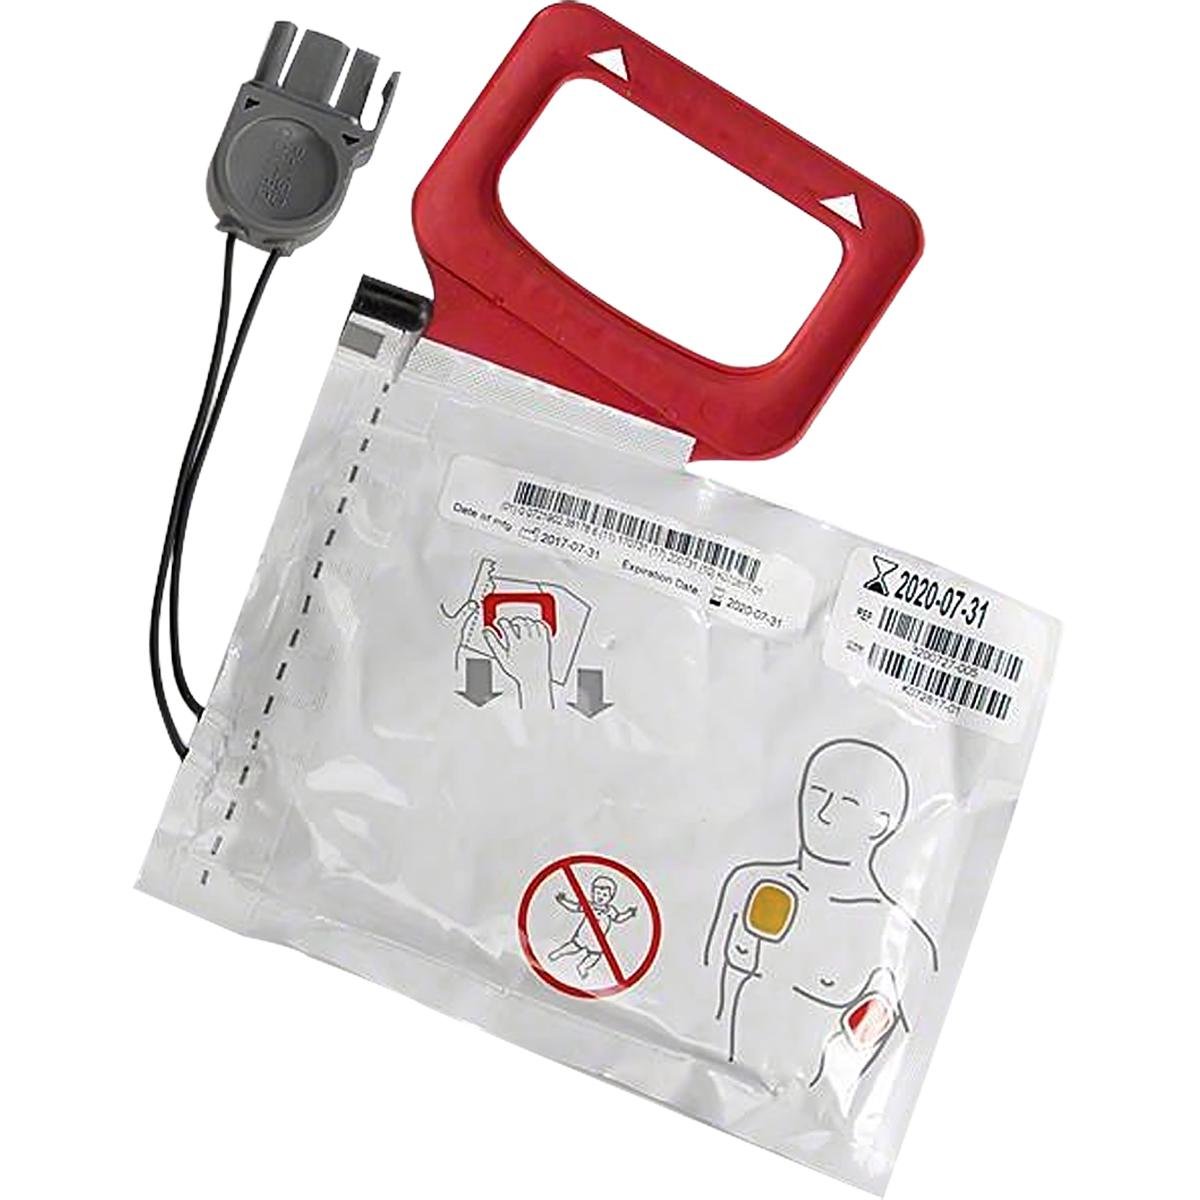 菲聲康徹LIFEPAK AED除顫Quick-pak電極片11103-000023